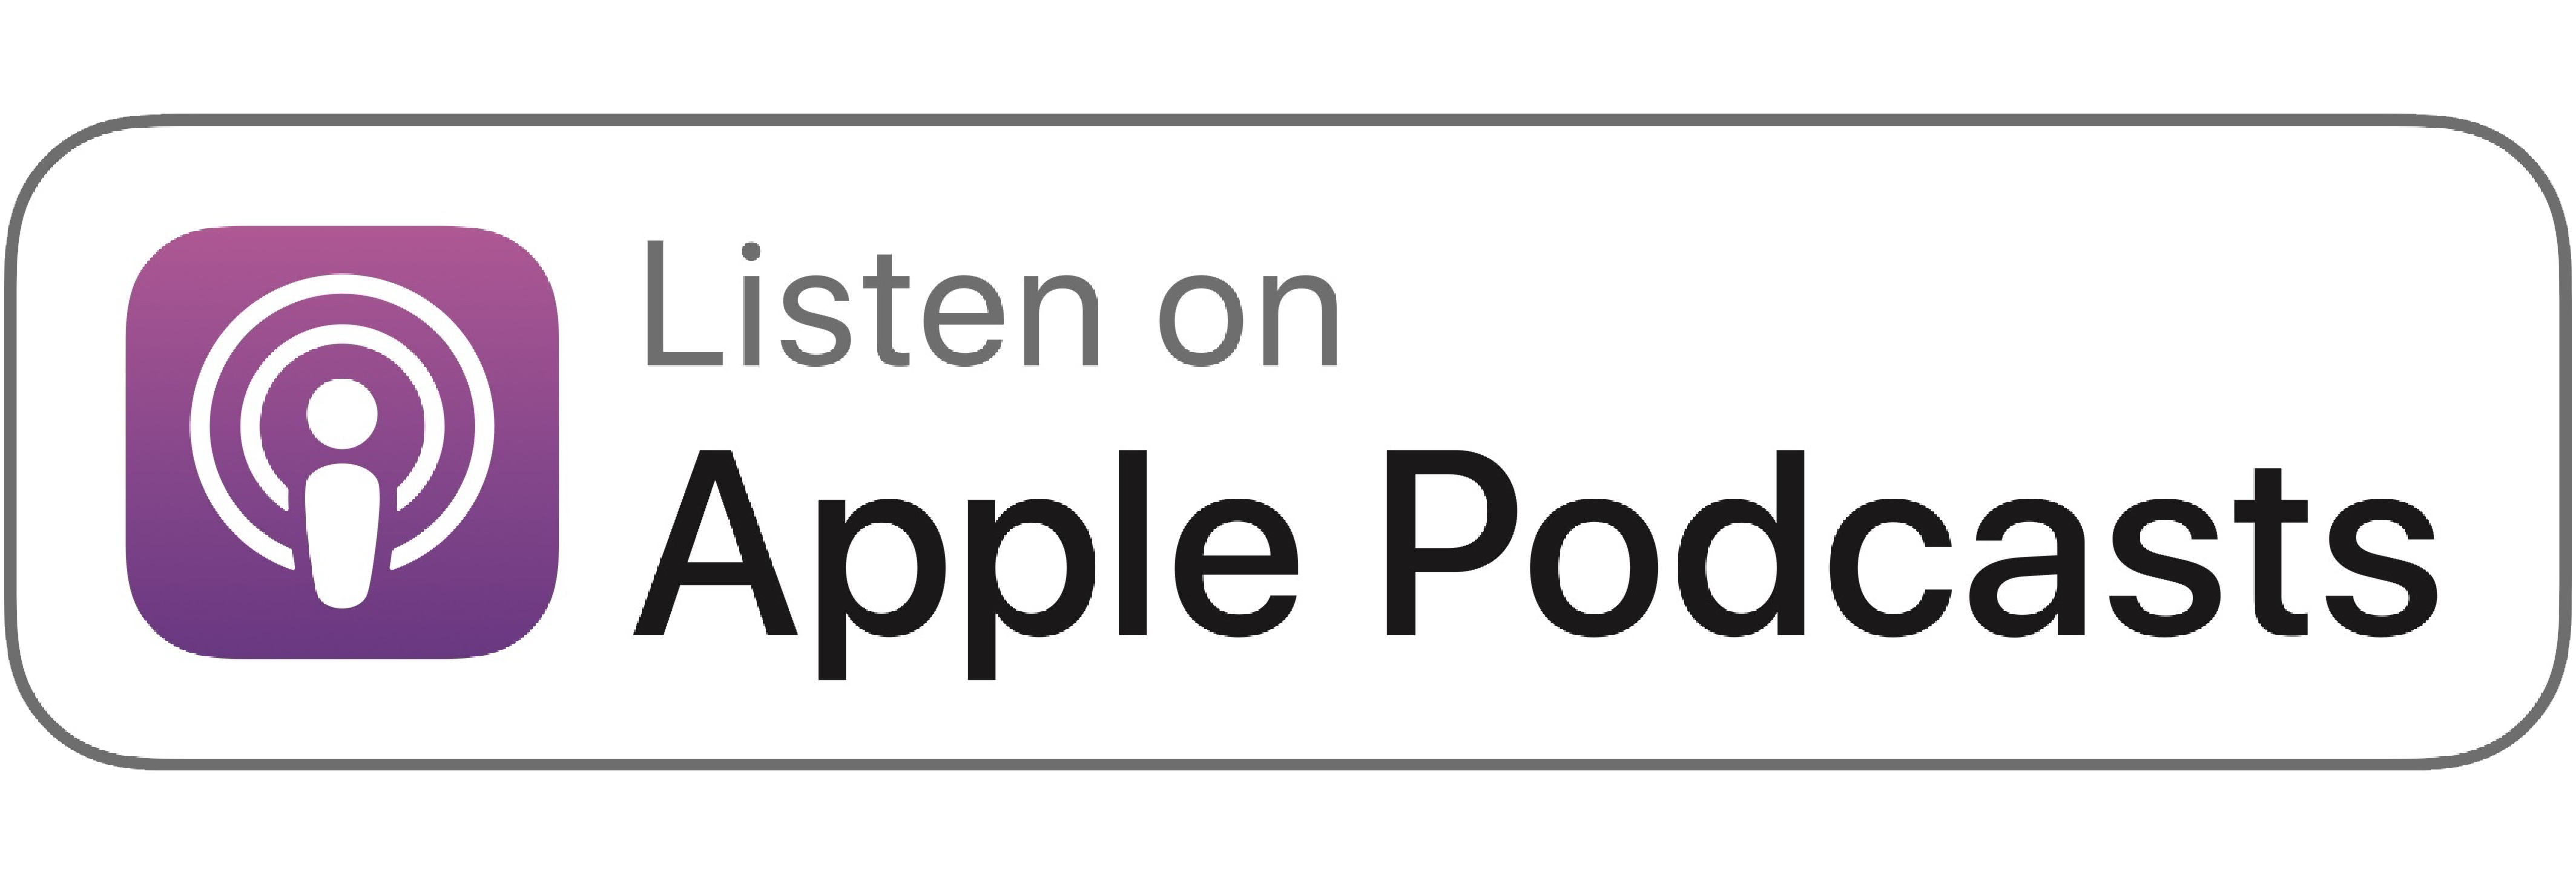 bossbabe-female-business-entrepreneurship-Apple-podcast